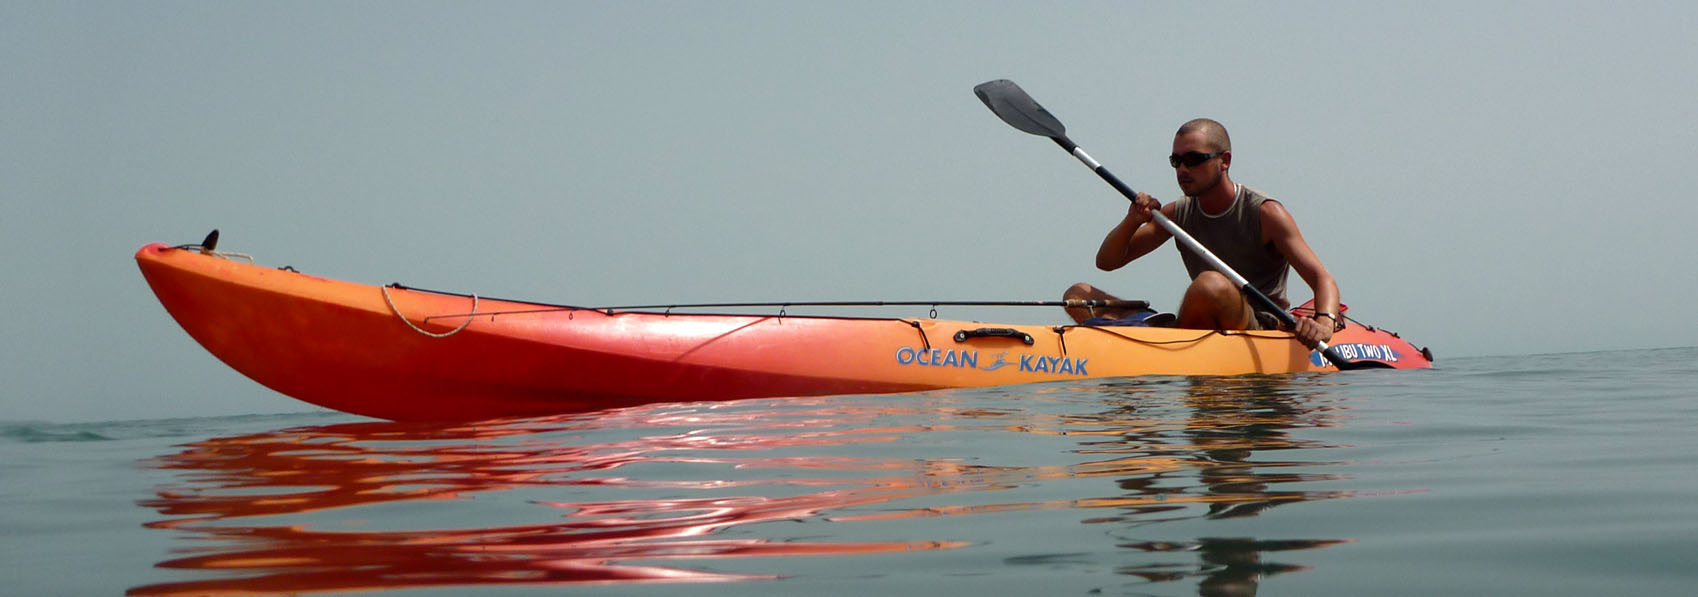 plaisir de la glisse en kayak autour de kere au contact de l'ocean